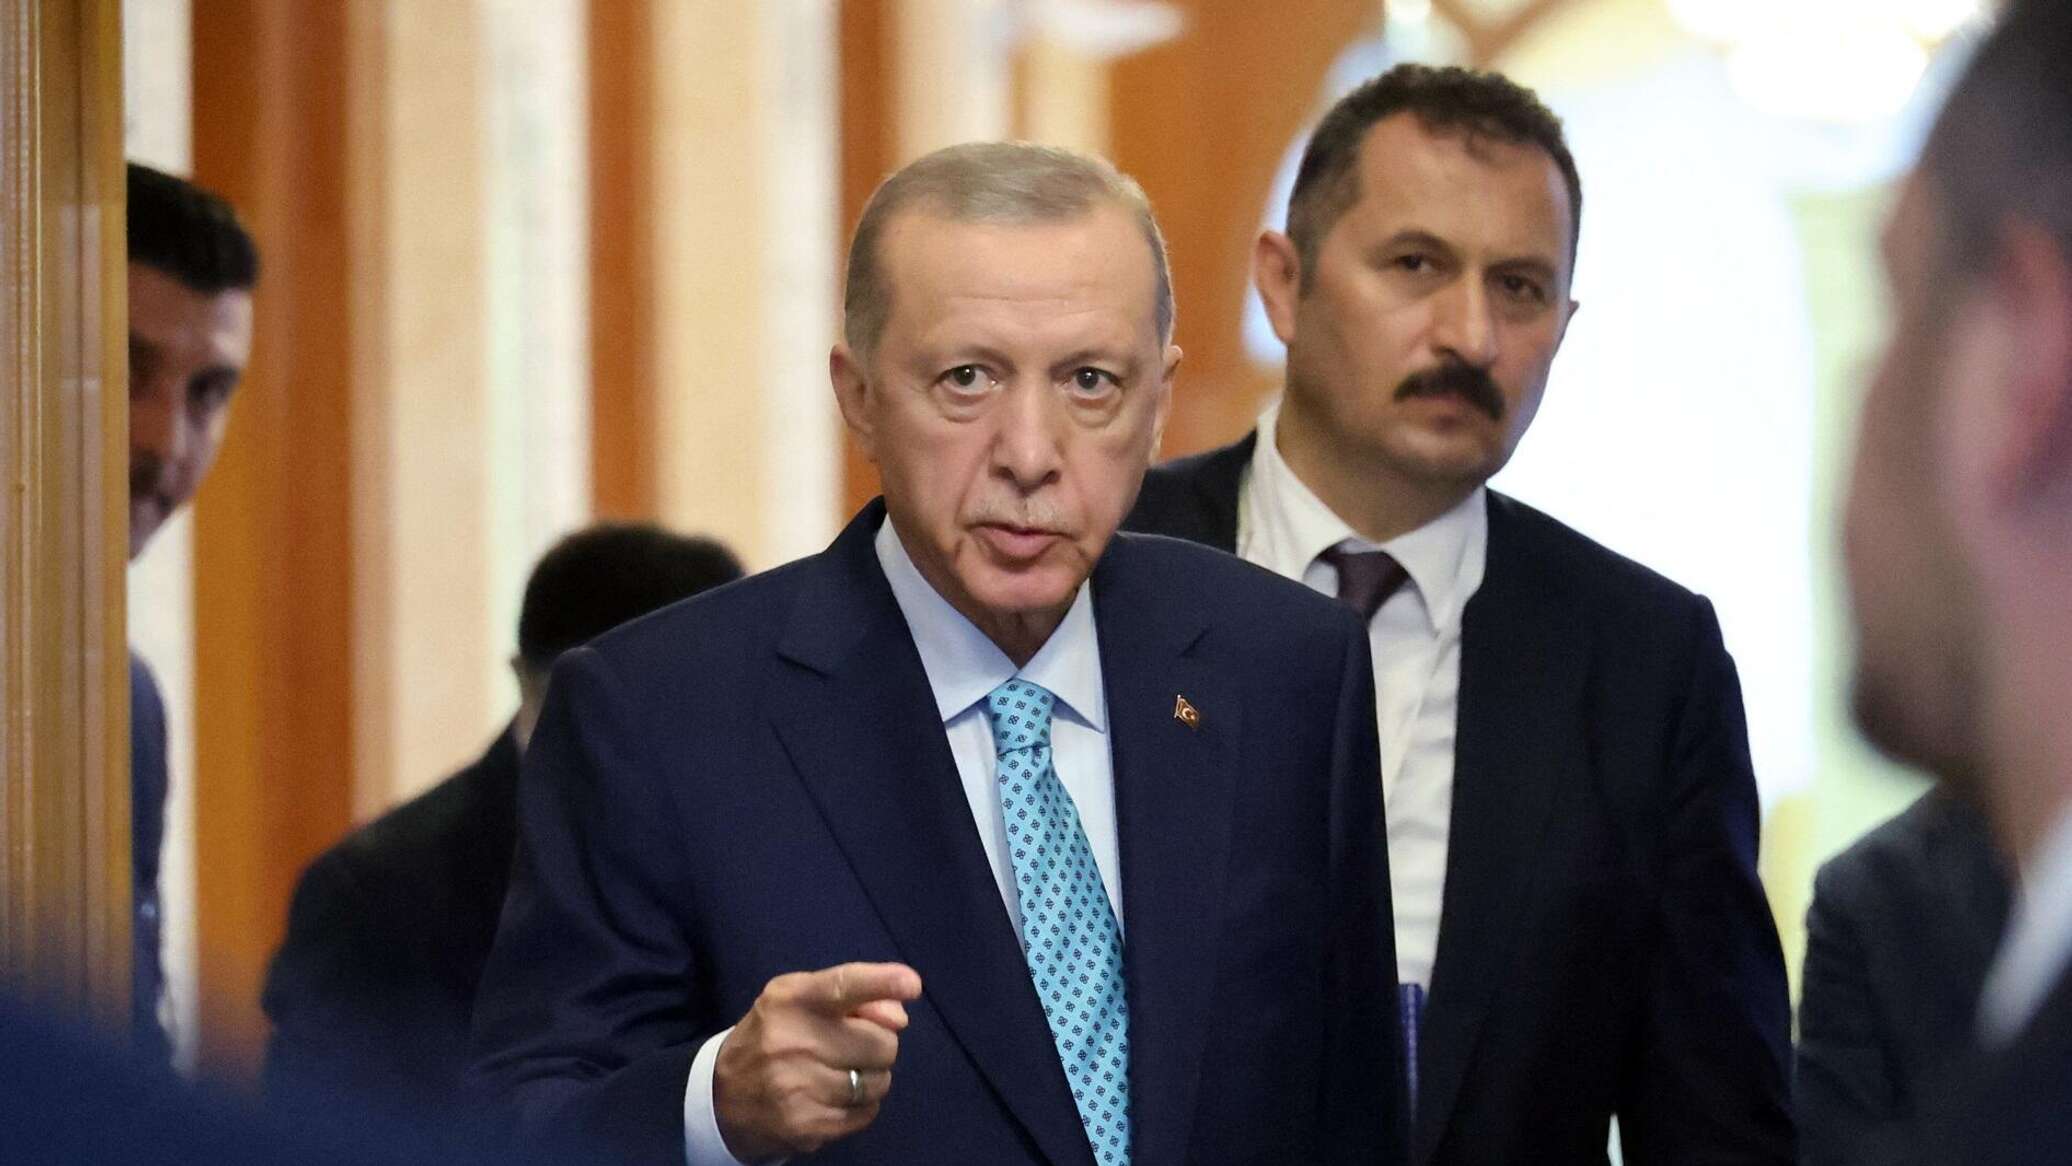 أردوغان: تركيا يمكنها "الانفصال" عن الاتحاد الأوروبي إذا لزم الأمر